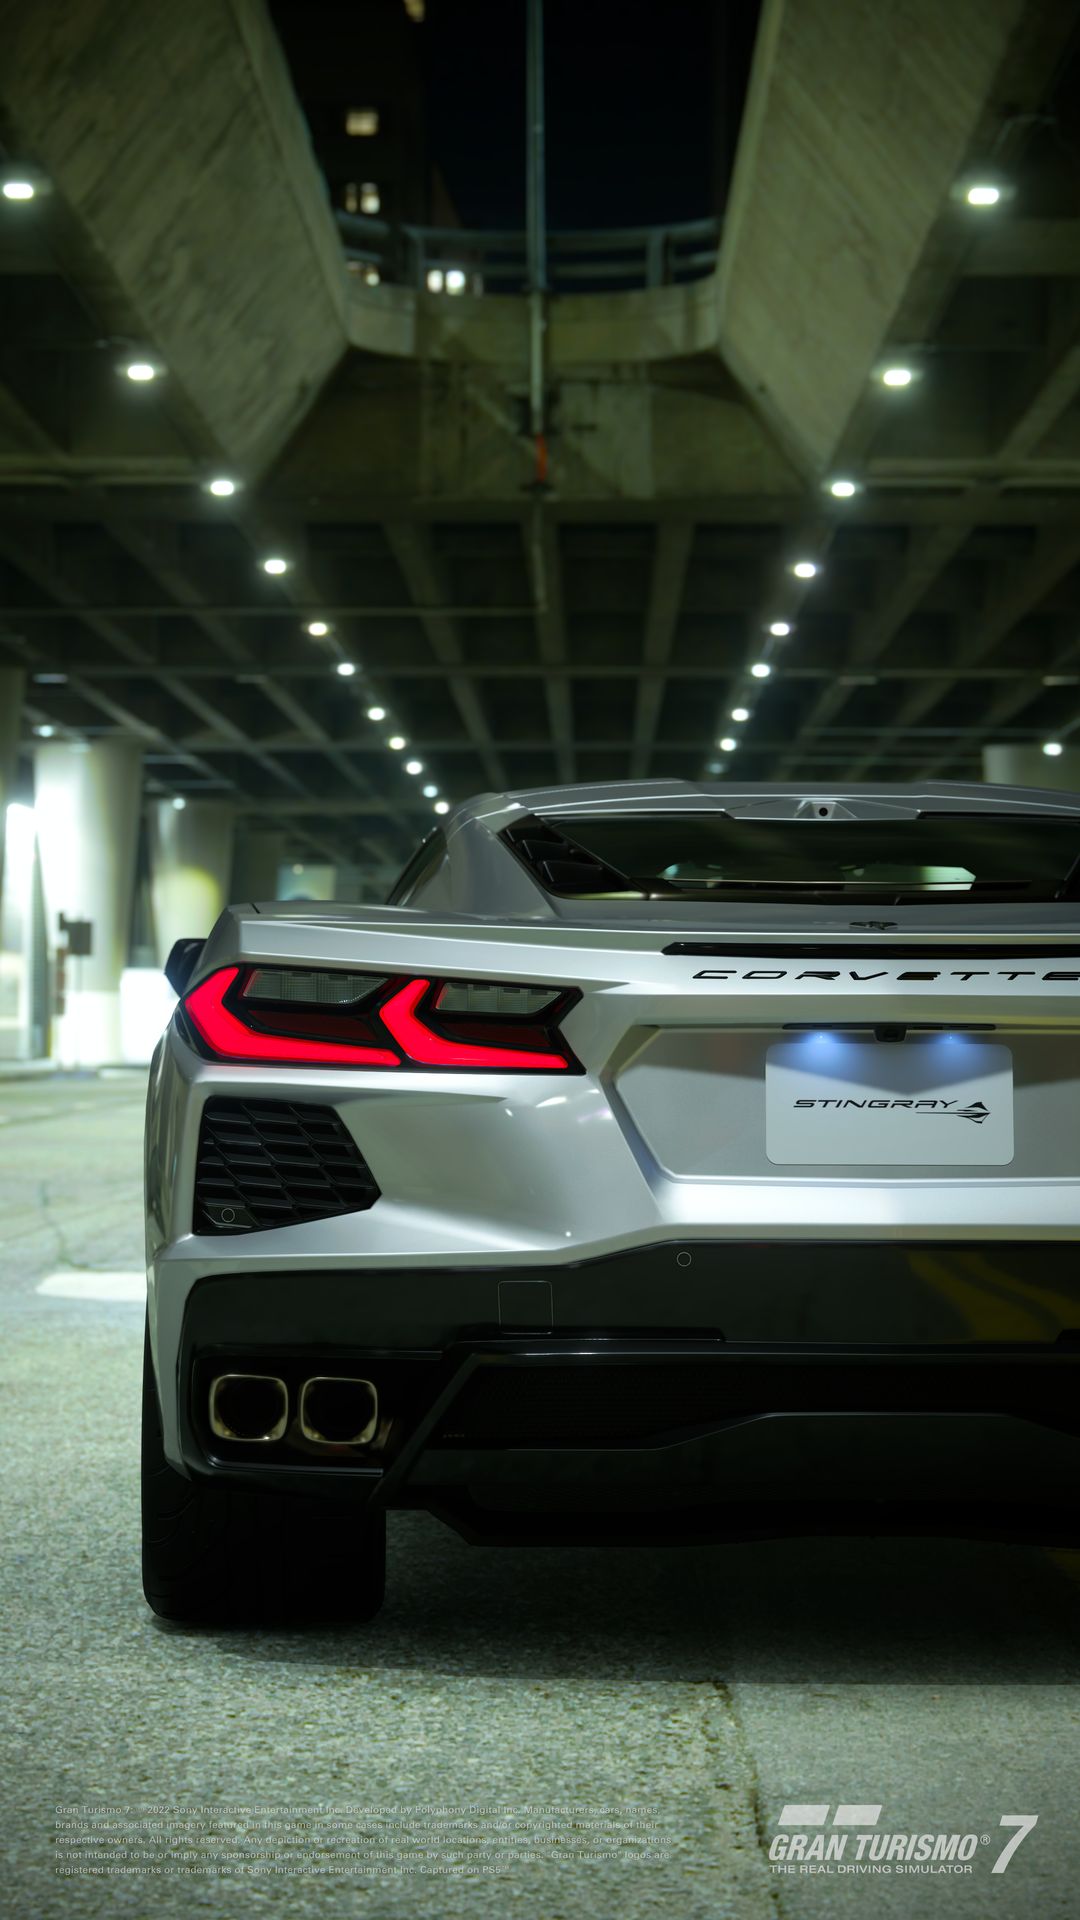 Gran Turismo 7 - atualização trará novos carros e experiência do filme. -  SUPERNOVAS